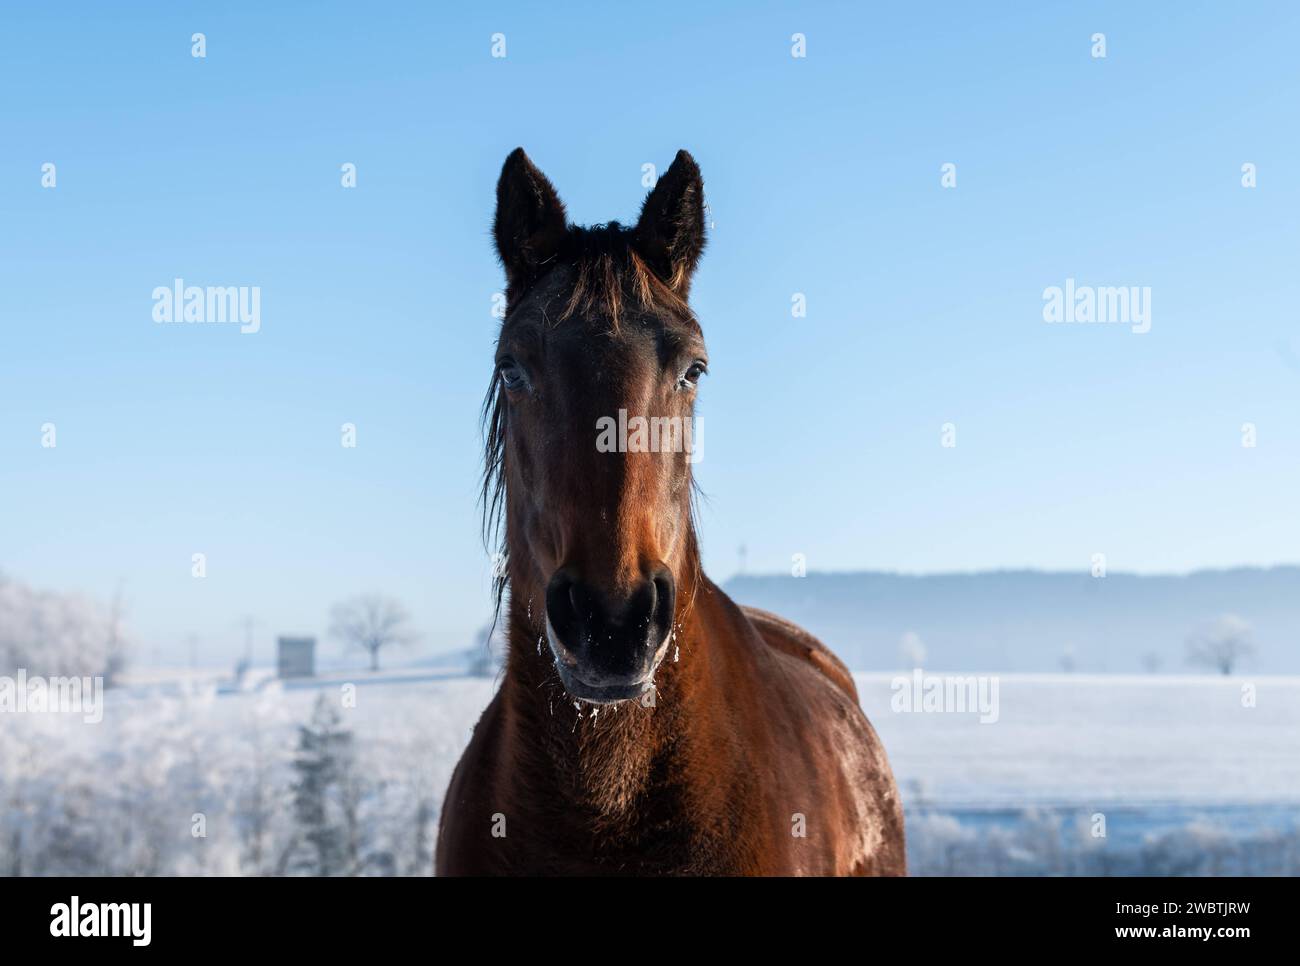 Ein Pferd steht bei Morgenlicht auf einer verschneiten Koppel. Rottweil Baden-Württemberg Deutschland *** Un cavallo si trova in un paddock innevato al mattino Rottweil Baden Württemberg Germania Foto Stock